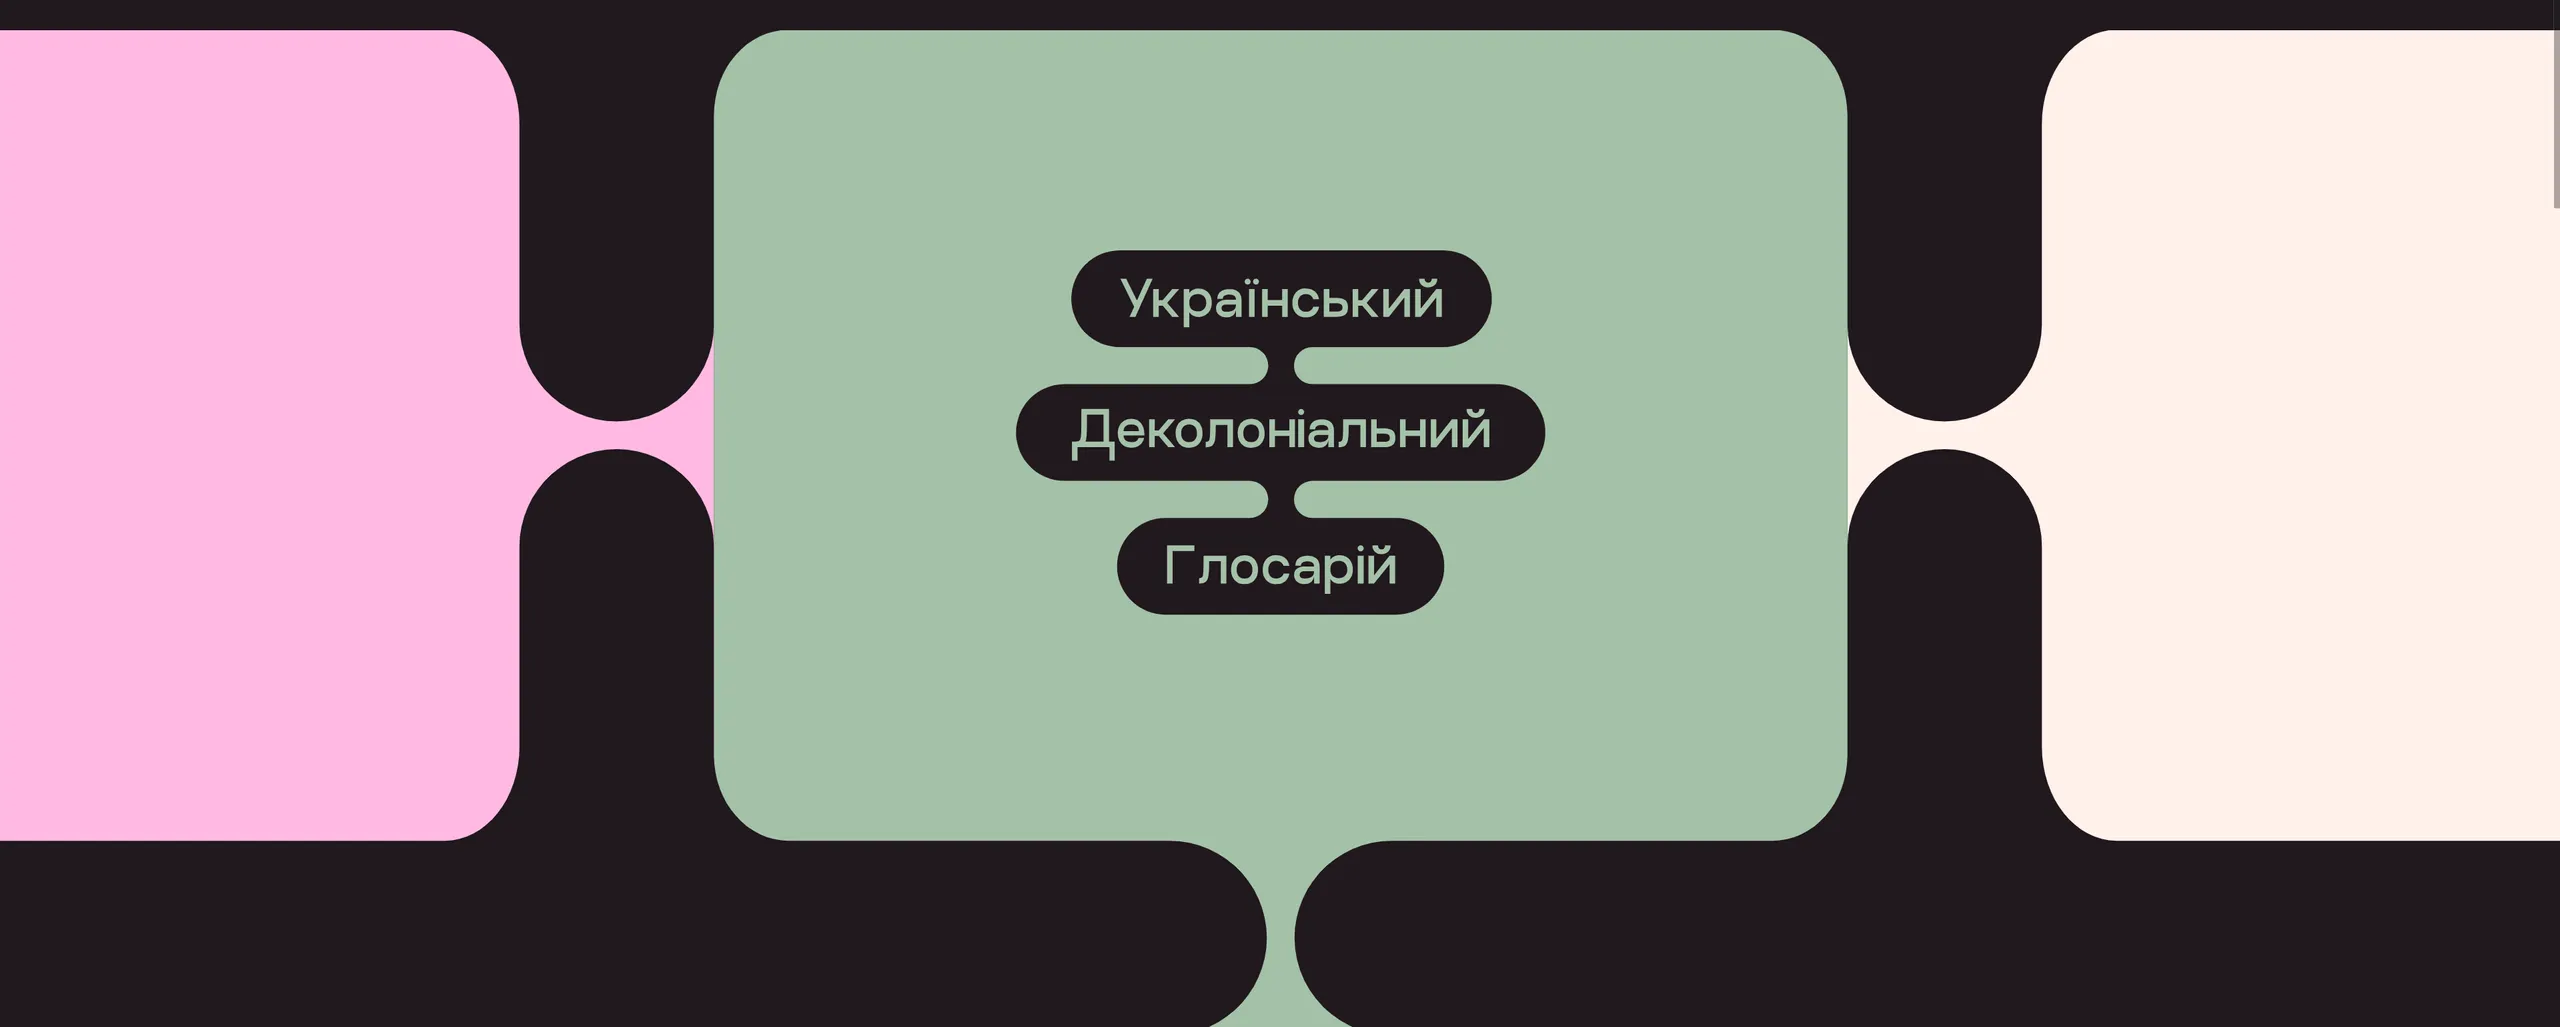 Ukrainian Decolonial Glossary logo